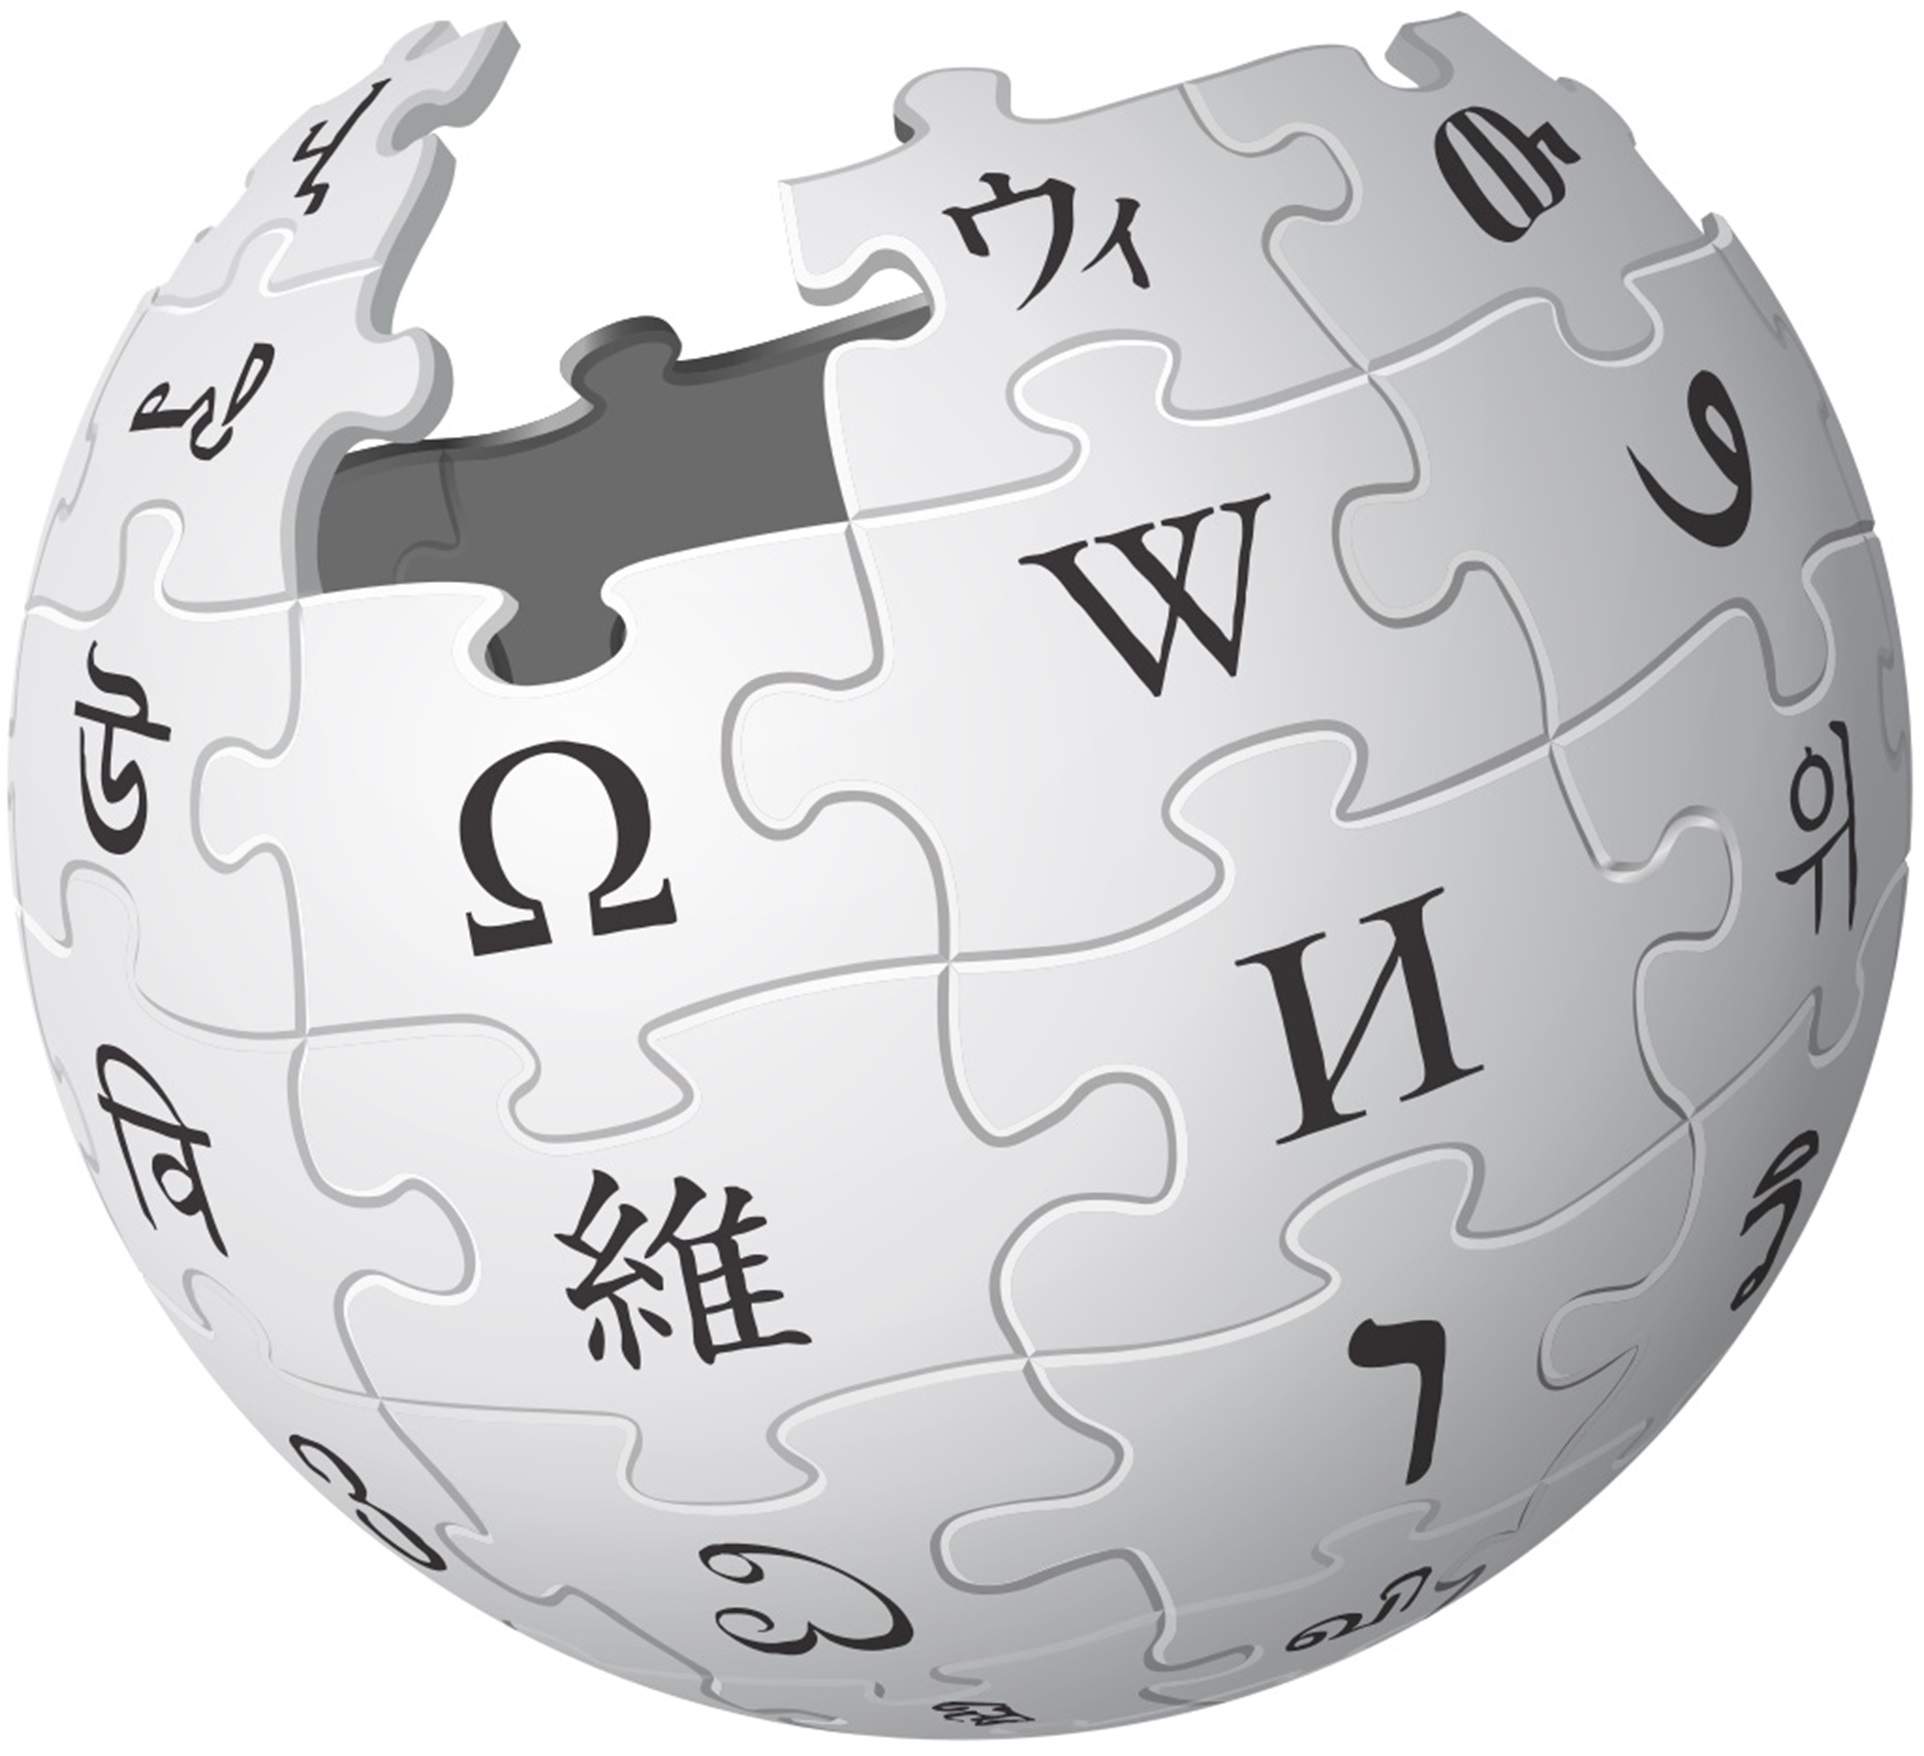 La Viquipèdia supera les 40.000 biografies de dones i assoleix l'objectiu marcat el 8-M